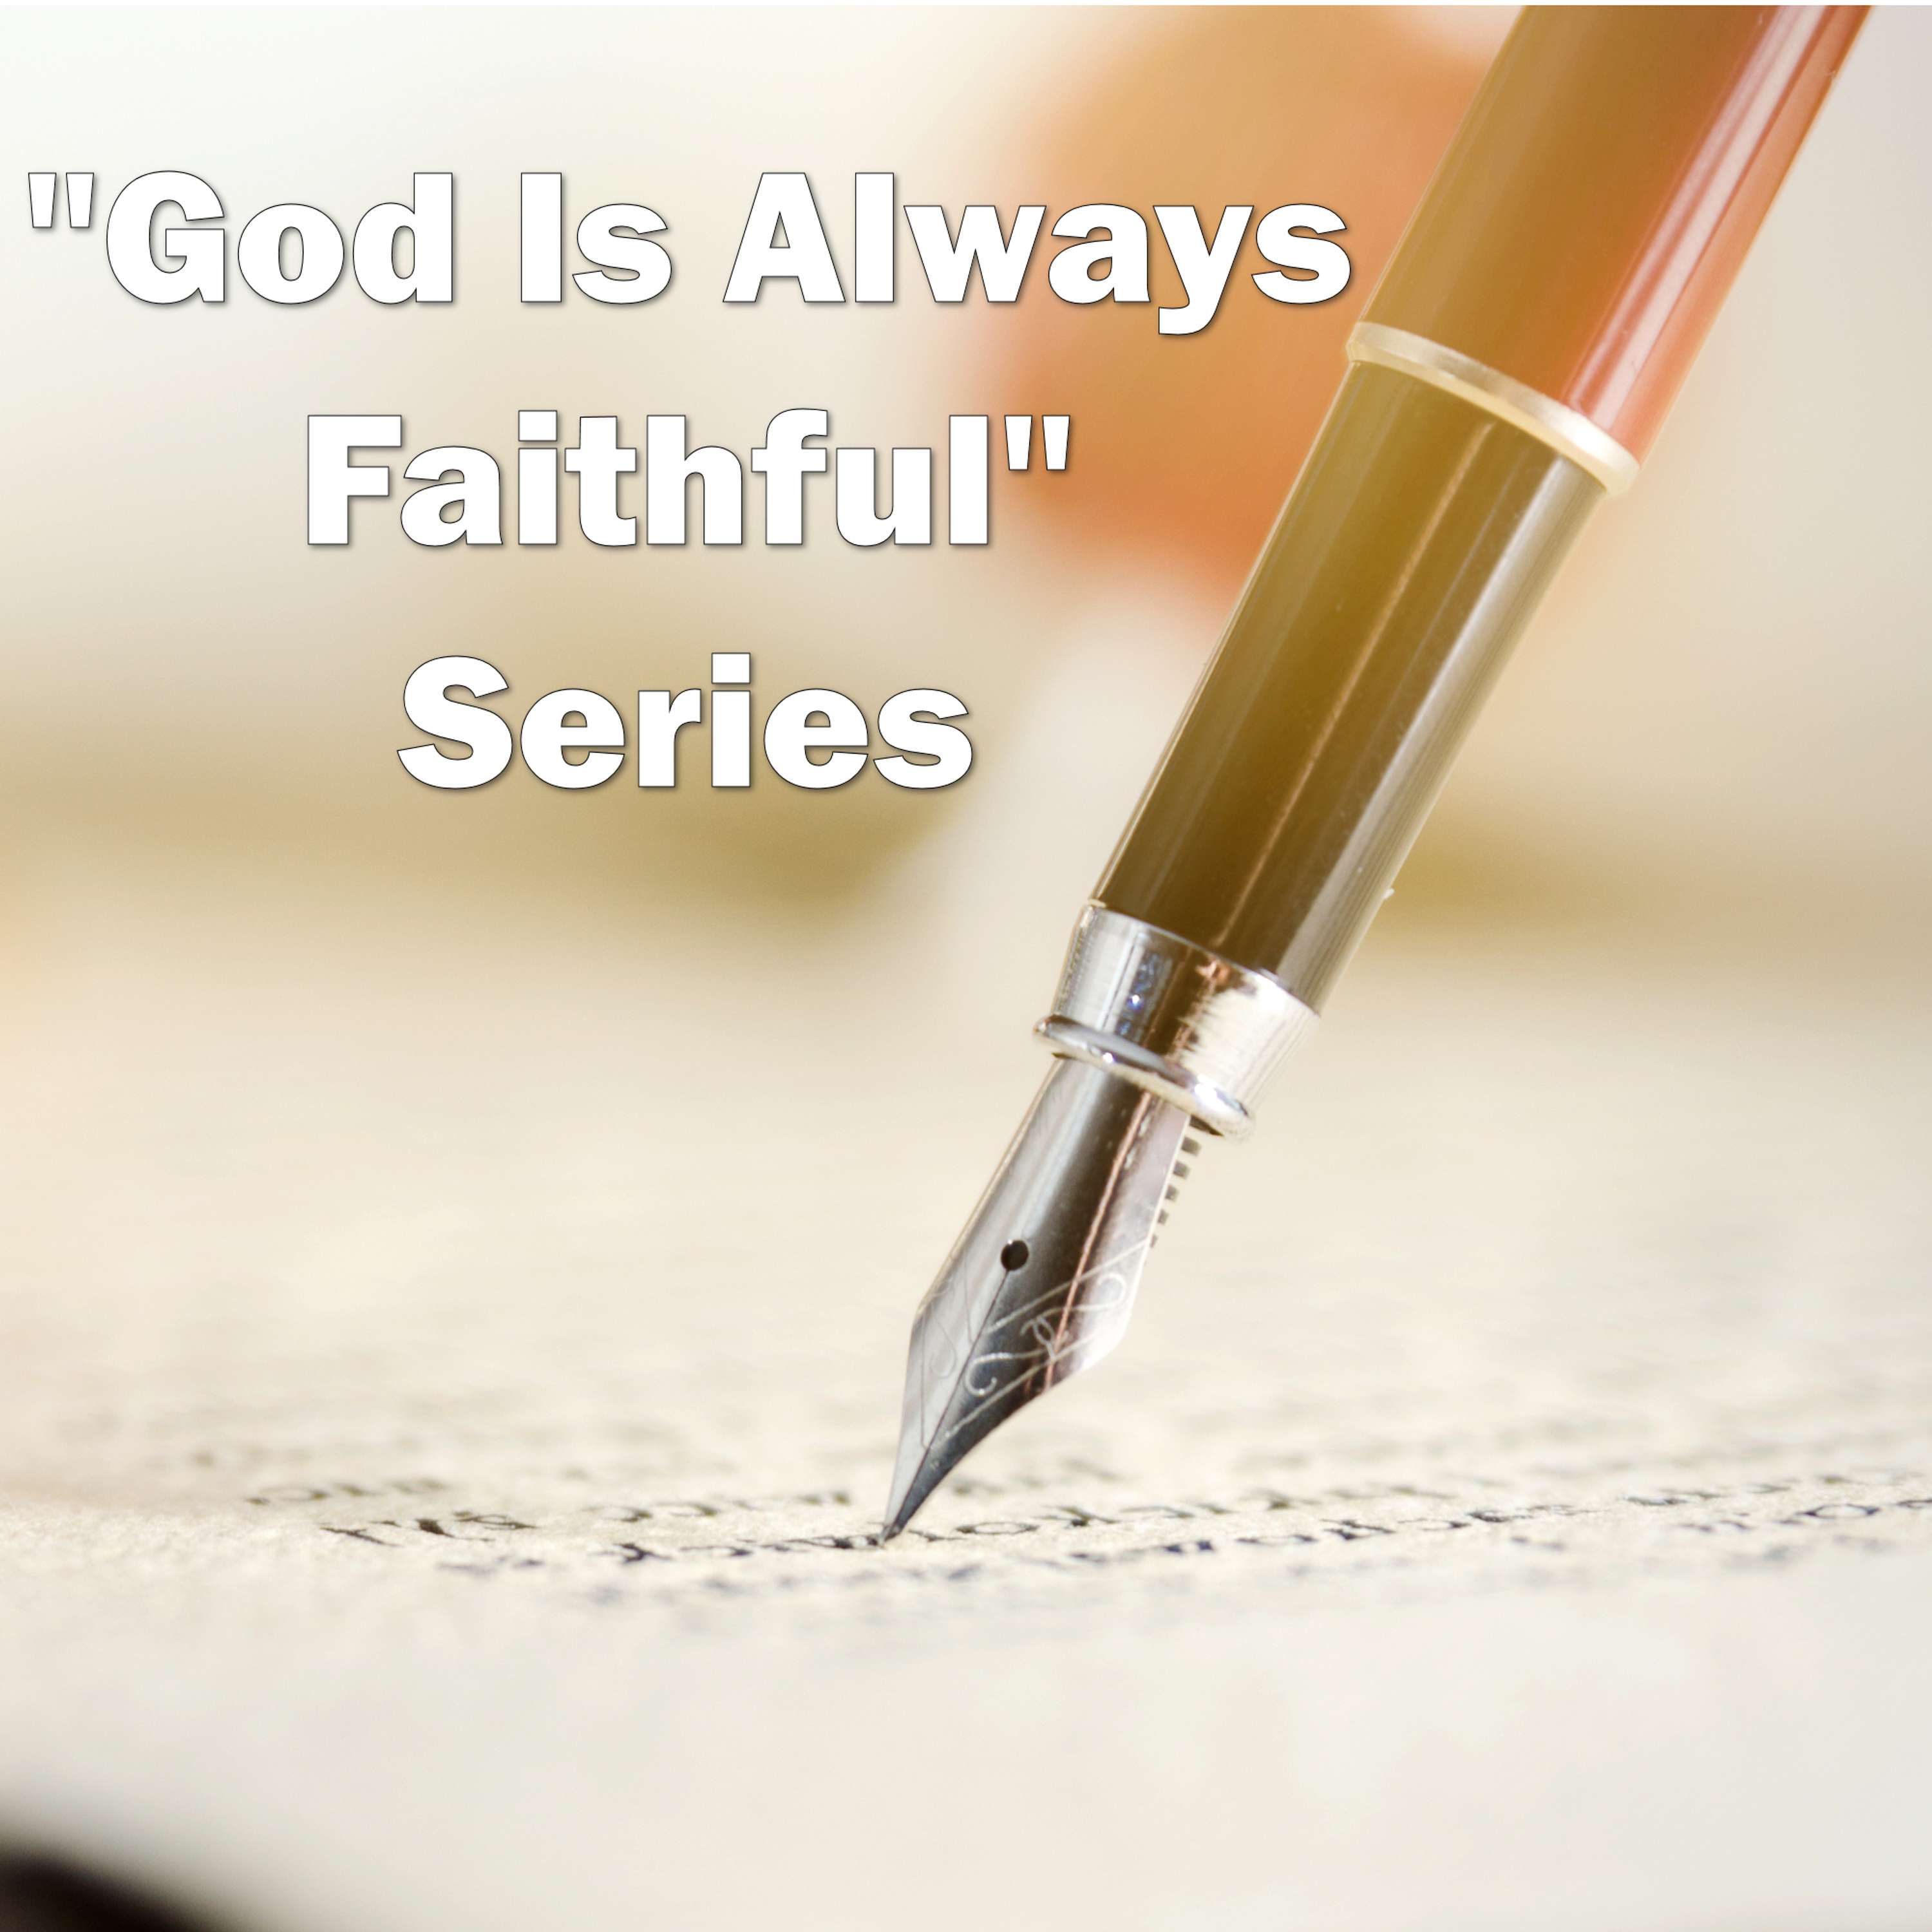 Session 1 - God Is Always Faithful (God Is Always Faithful Series)